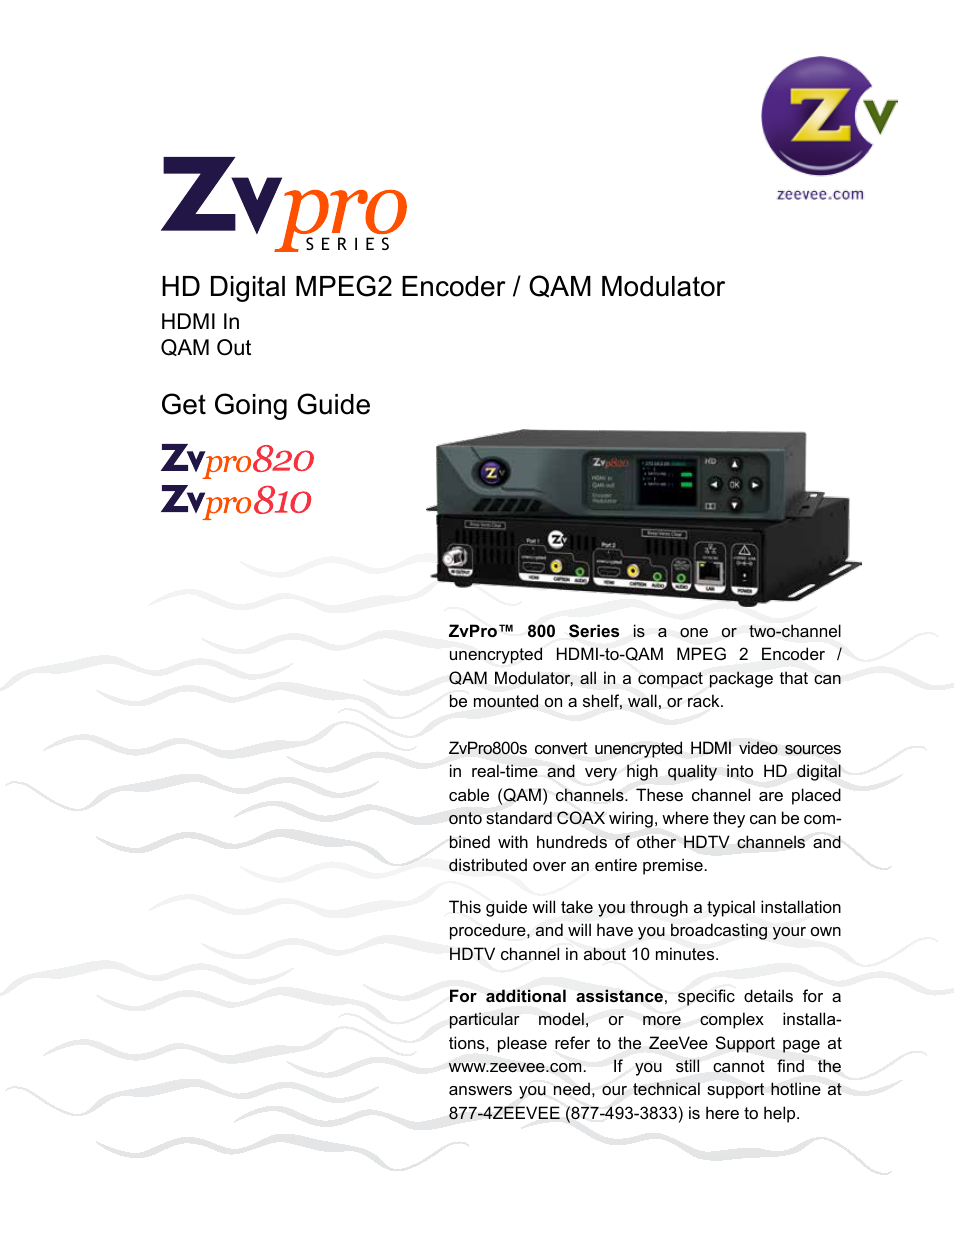 ZVPRO810 ZEEVEE - SINGLE CHANNEL DIGITAL VIA UNENCRYPTED HDMI